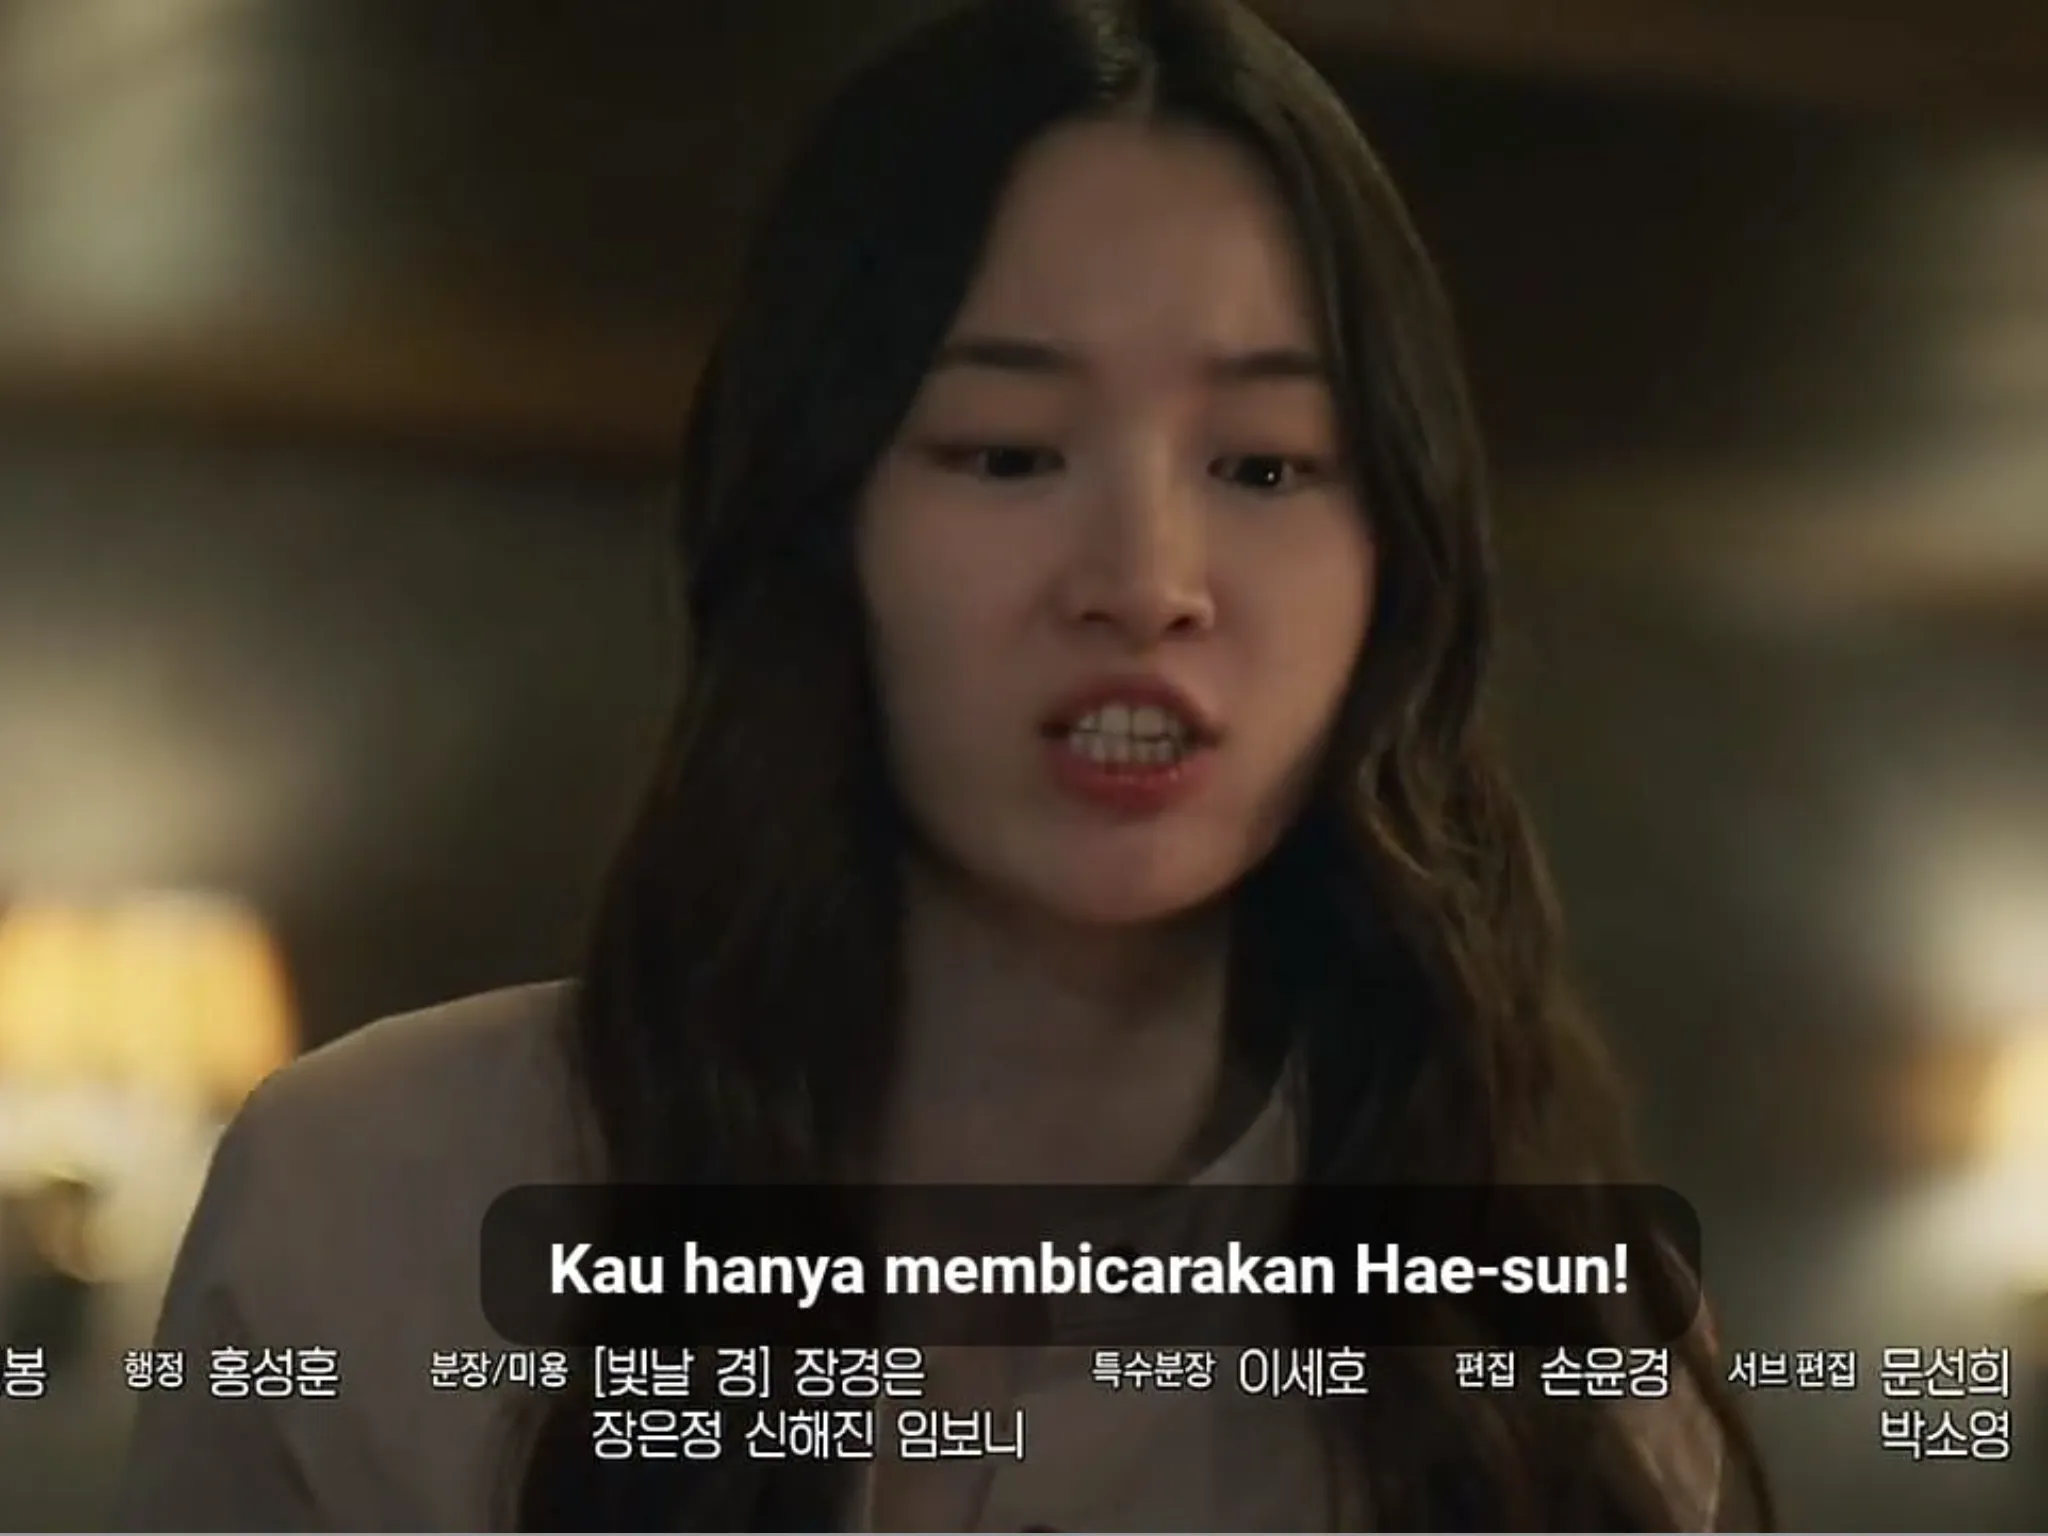 Sinopsis Heartbeat Episode 8 - Identitas Woo Hyeol Terbongkar?